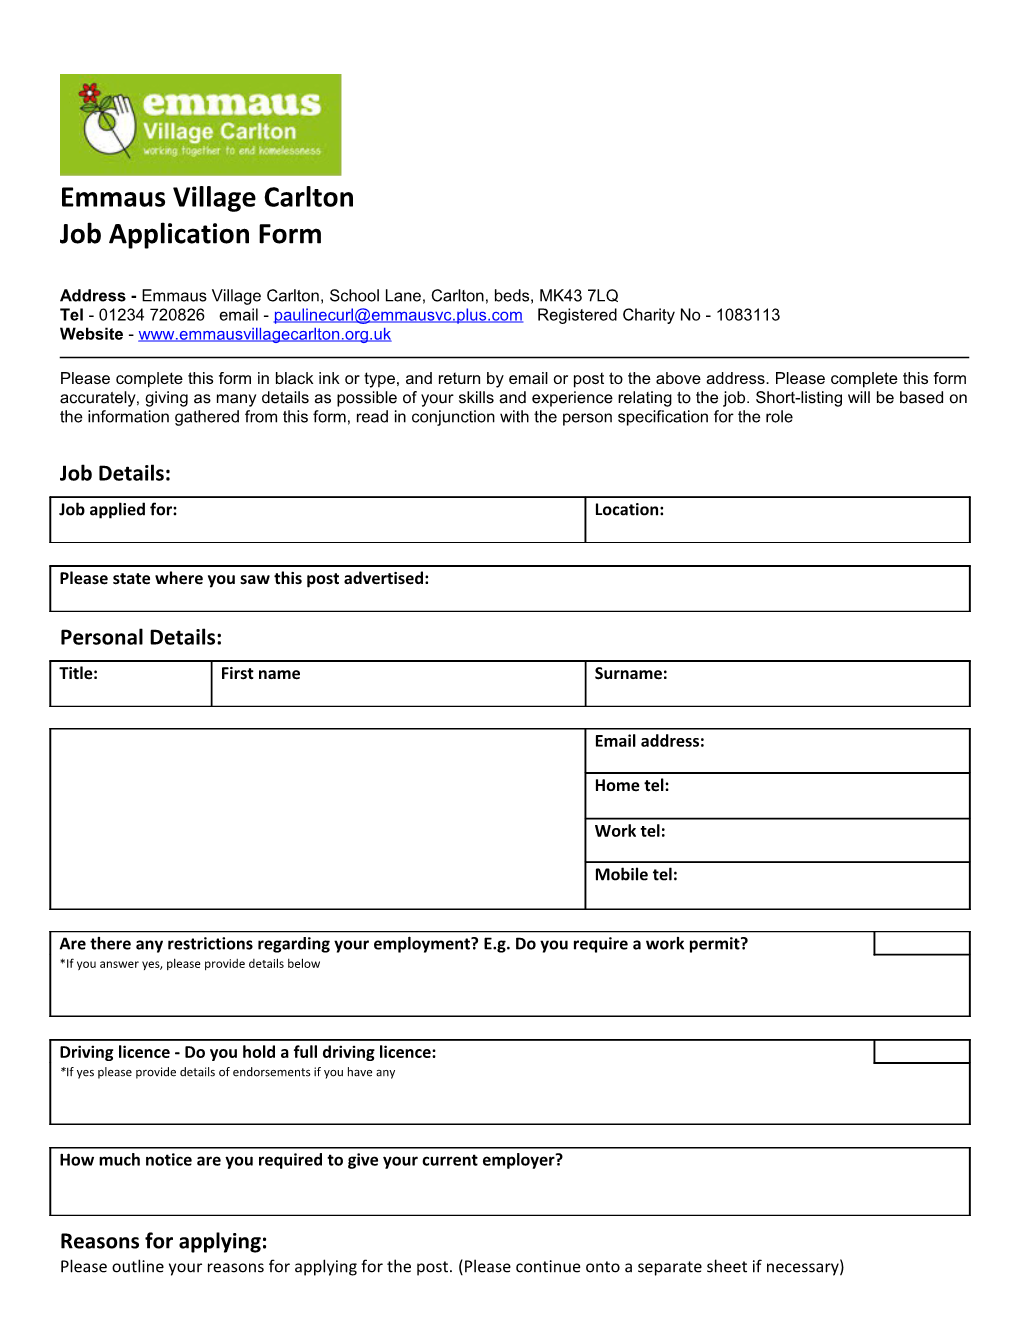 Emmaus Village Carlton s1